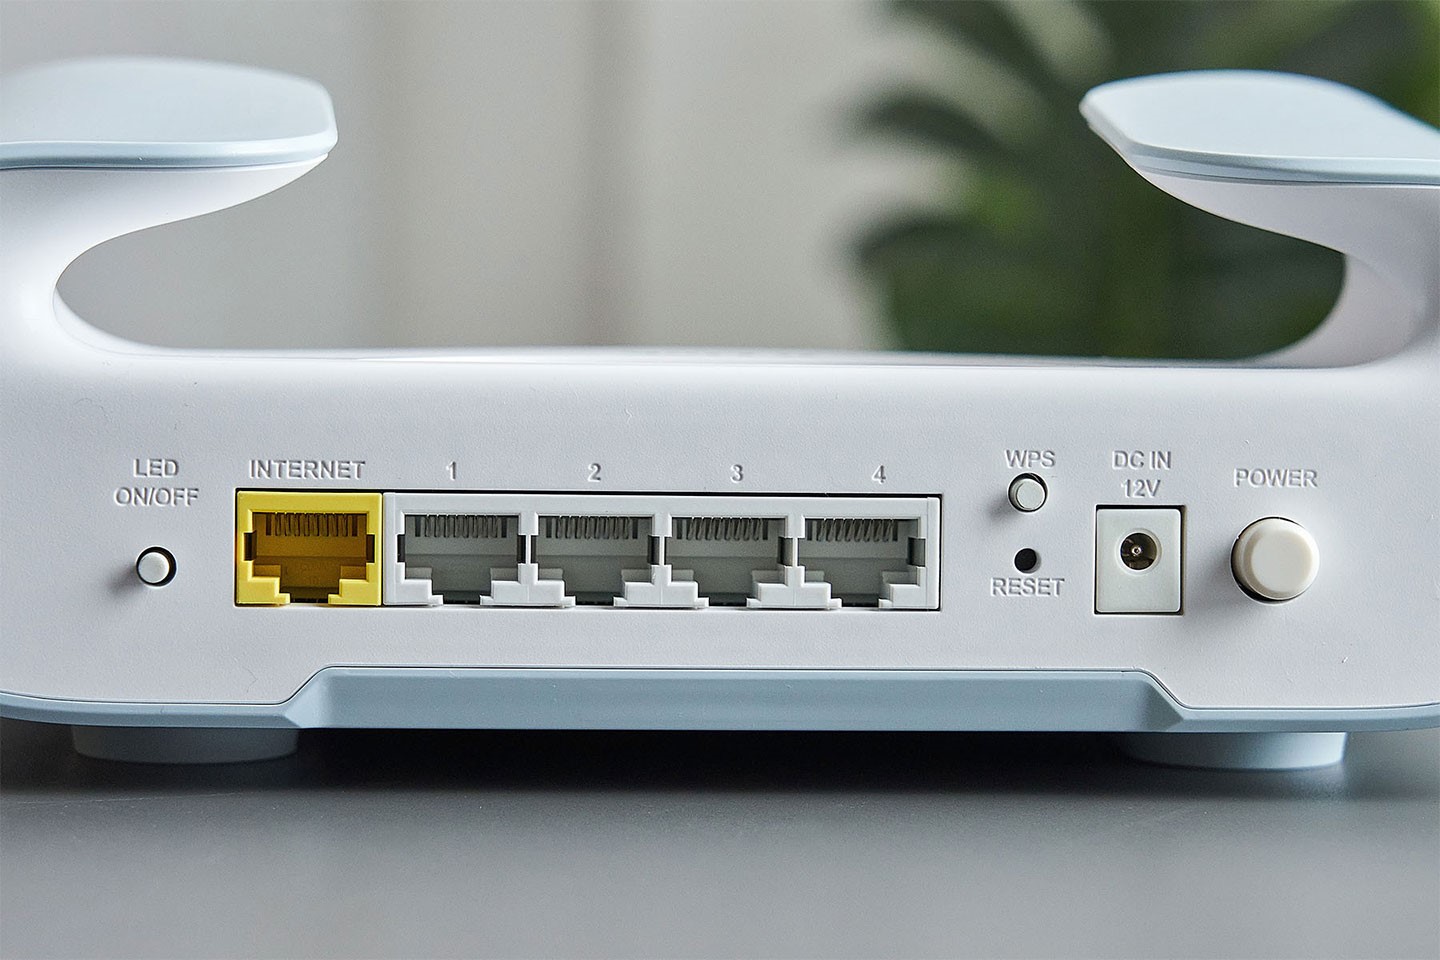 連接埠由左至右分別是 LED 燈號開關、1 WAN (2.5 GbE) + 4 LAN (GbE) 的網路埠、WPS 按鈕、Reset 重置、電源接口與電源開關。